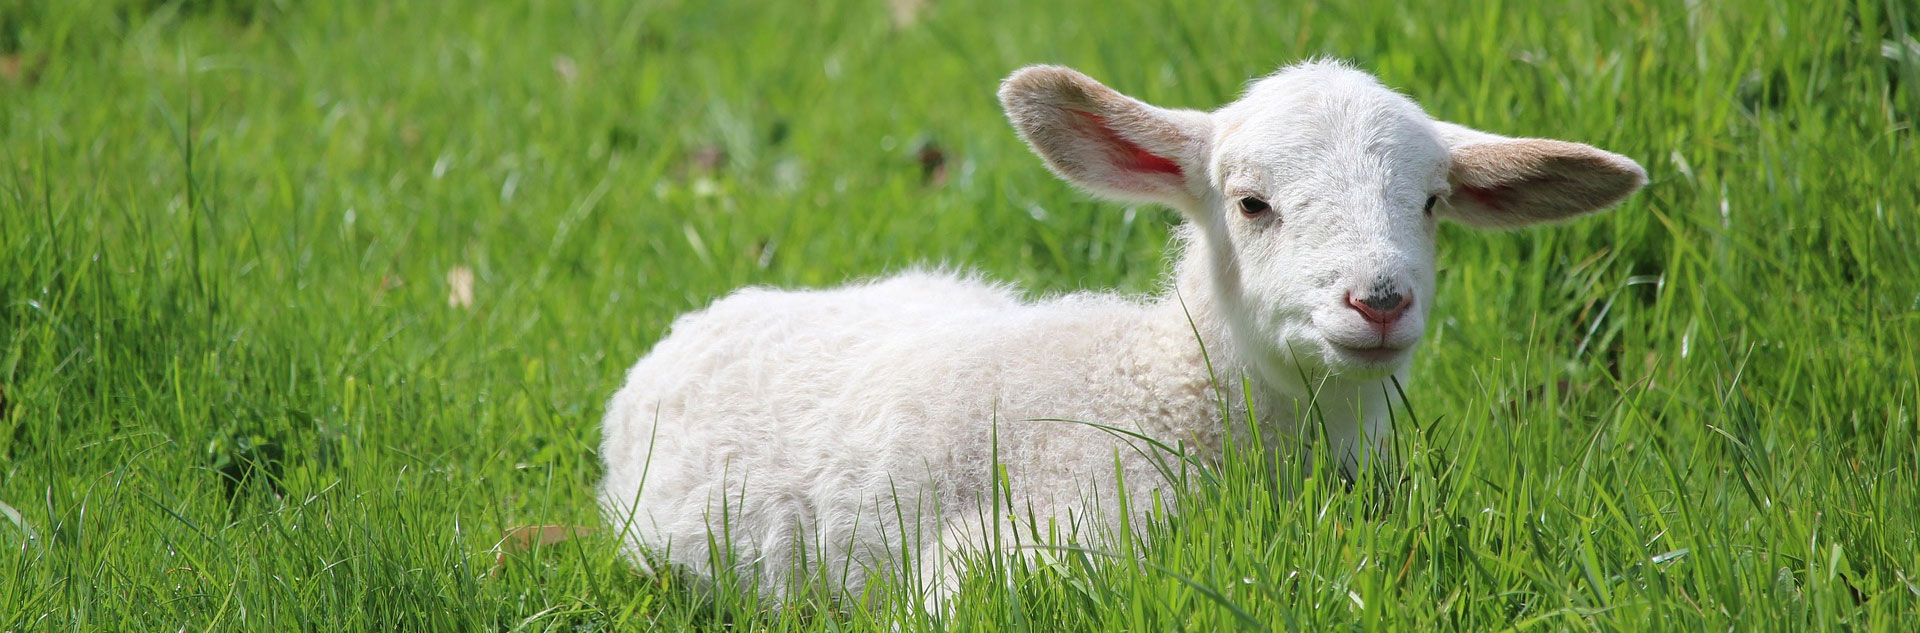 DK英文绘本See How They Grow:Lamb（看小动物成长系列之羔羊）下载